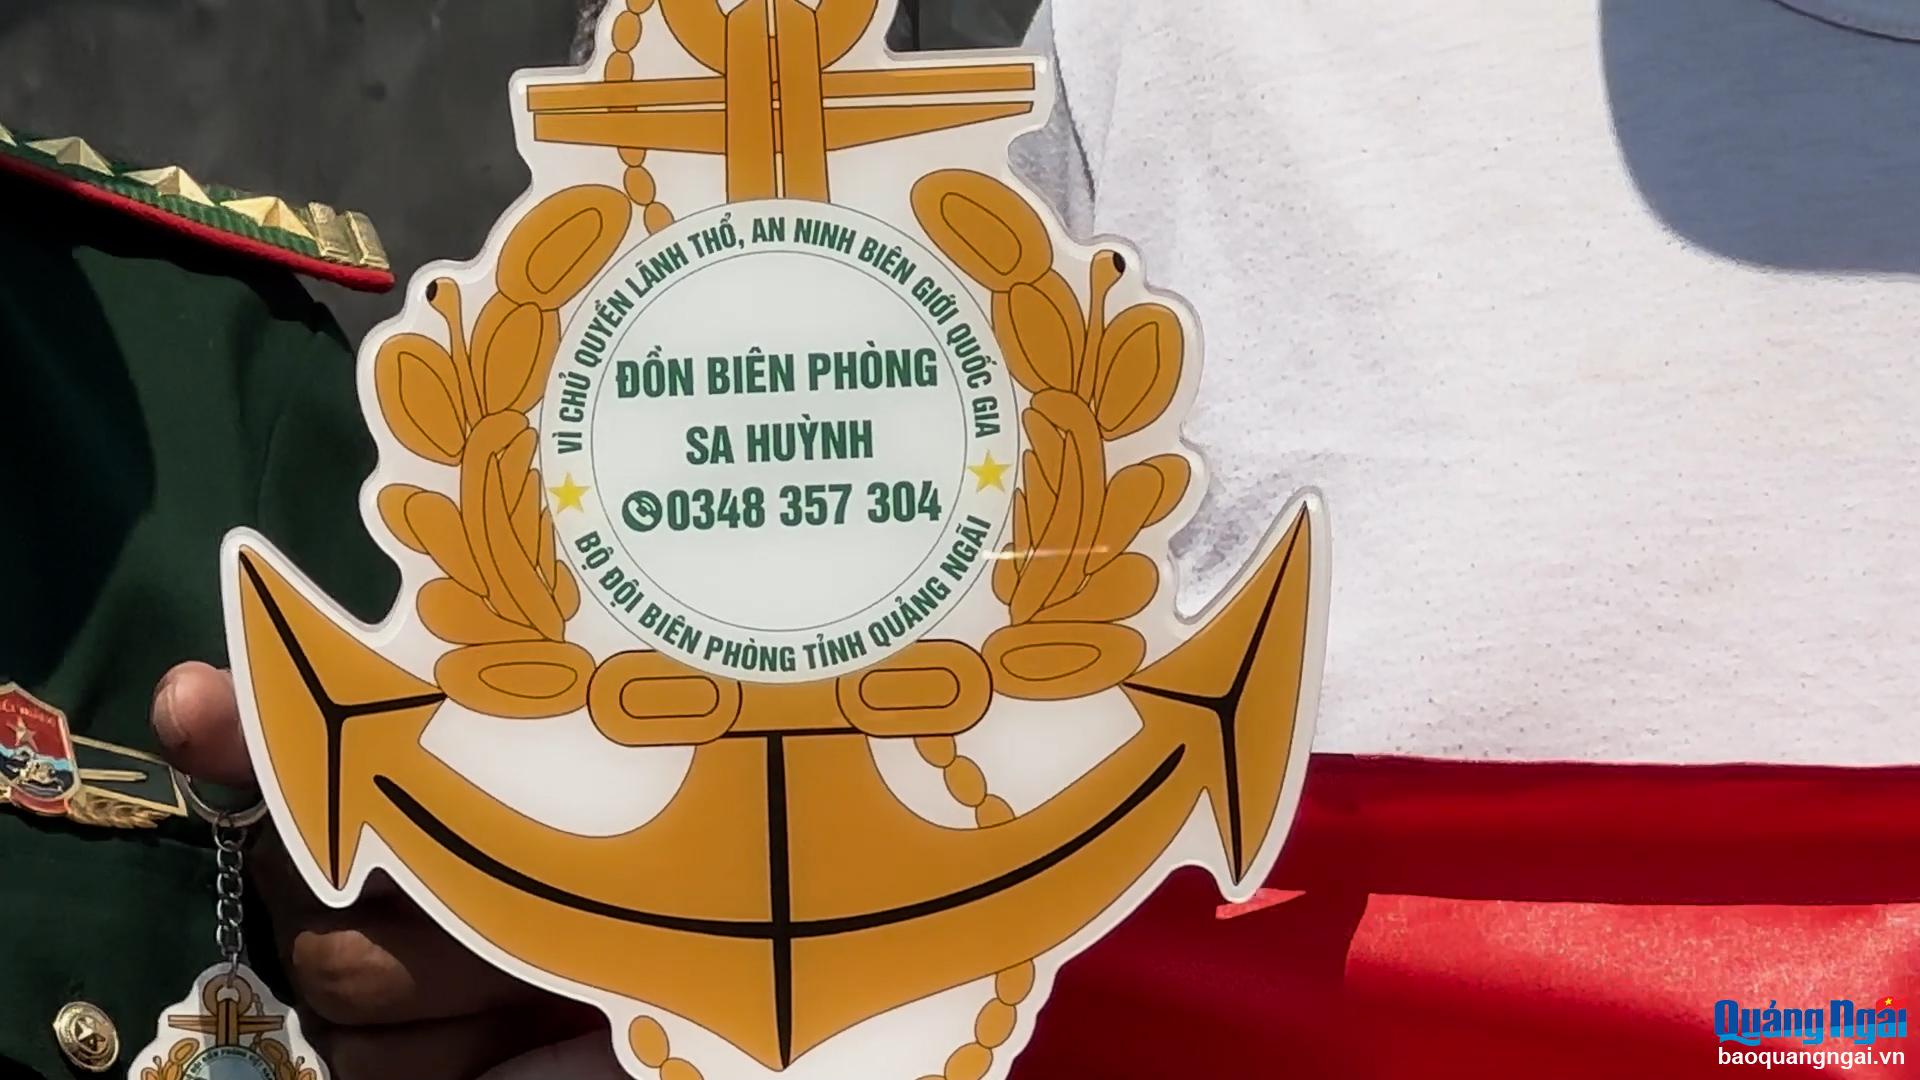 Các móc khóa ghi số điện thoại để ngư dân dễ dàng liên lạc khi gặp những bất trắc trên biển.